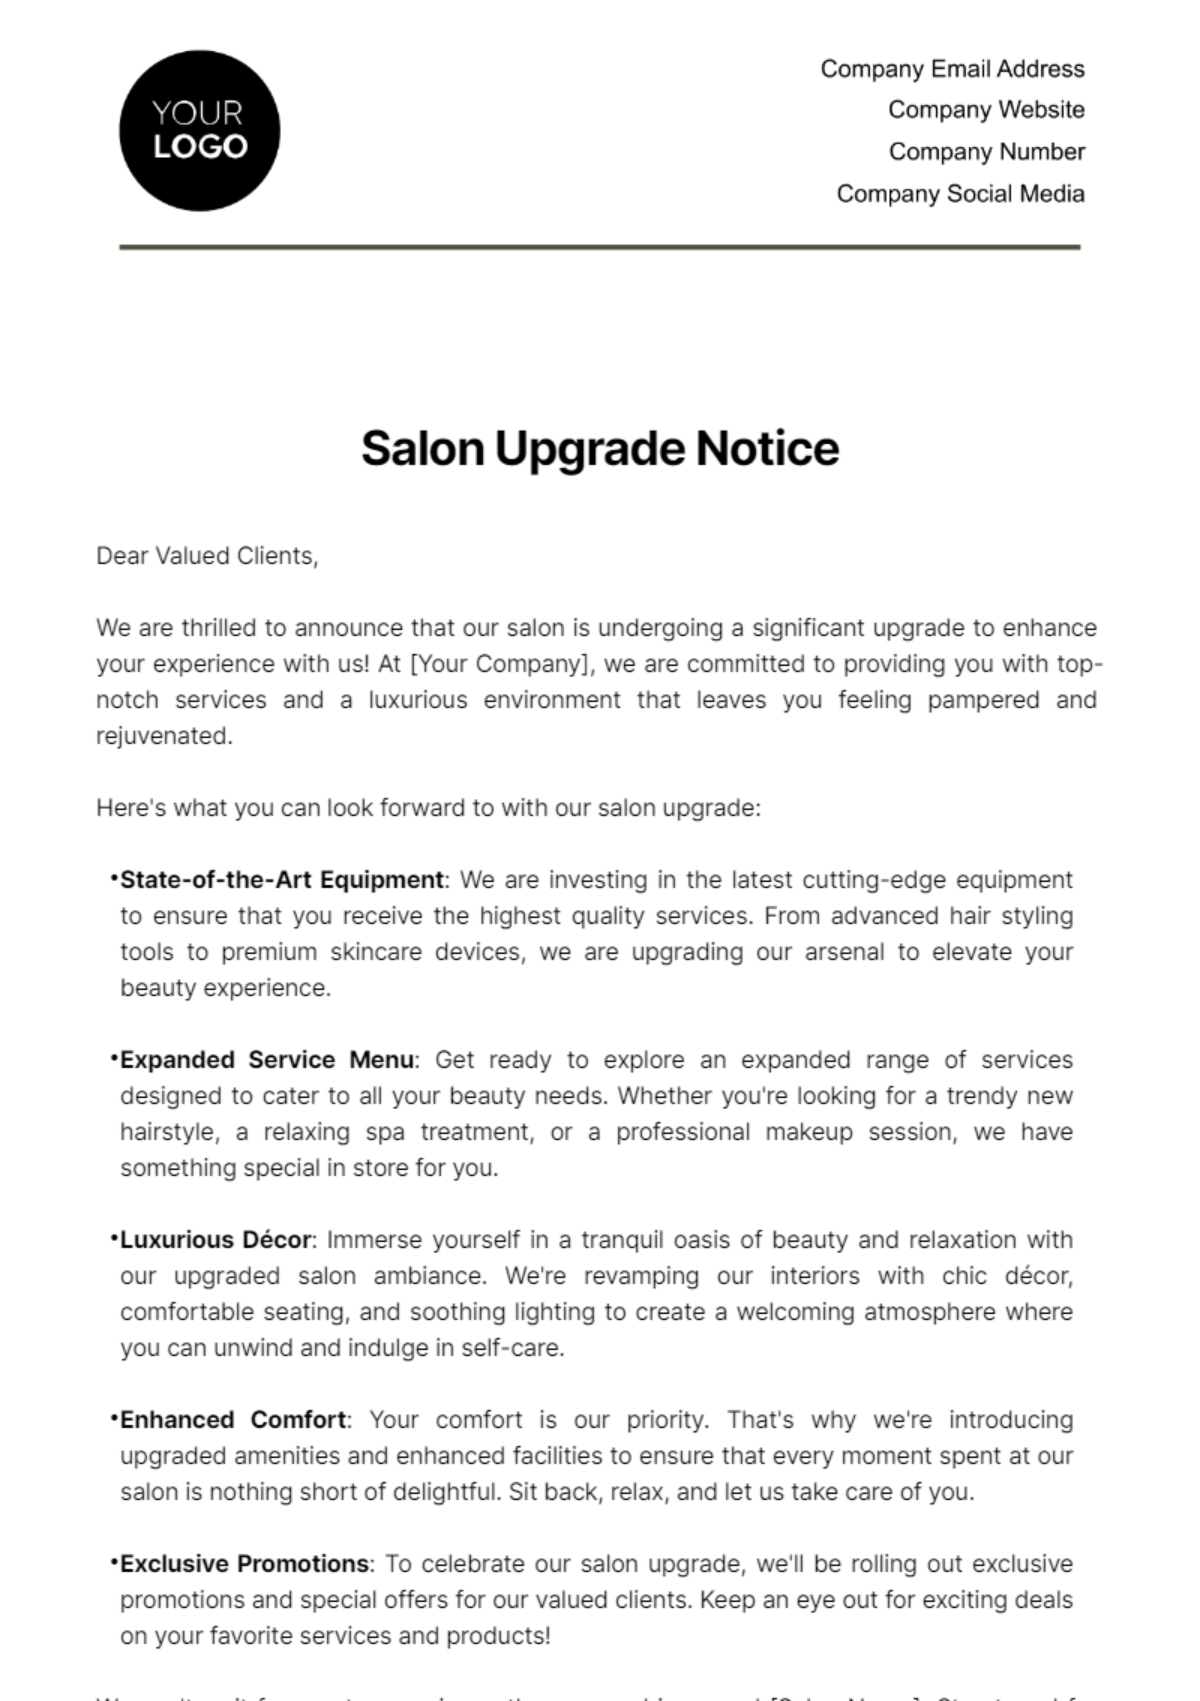 Salon Upgrade Notice Template